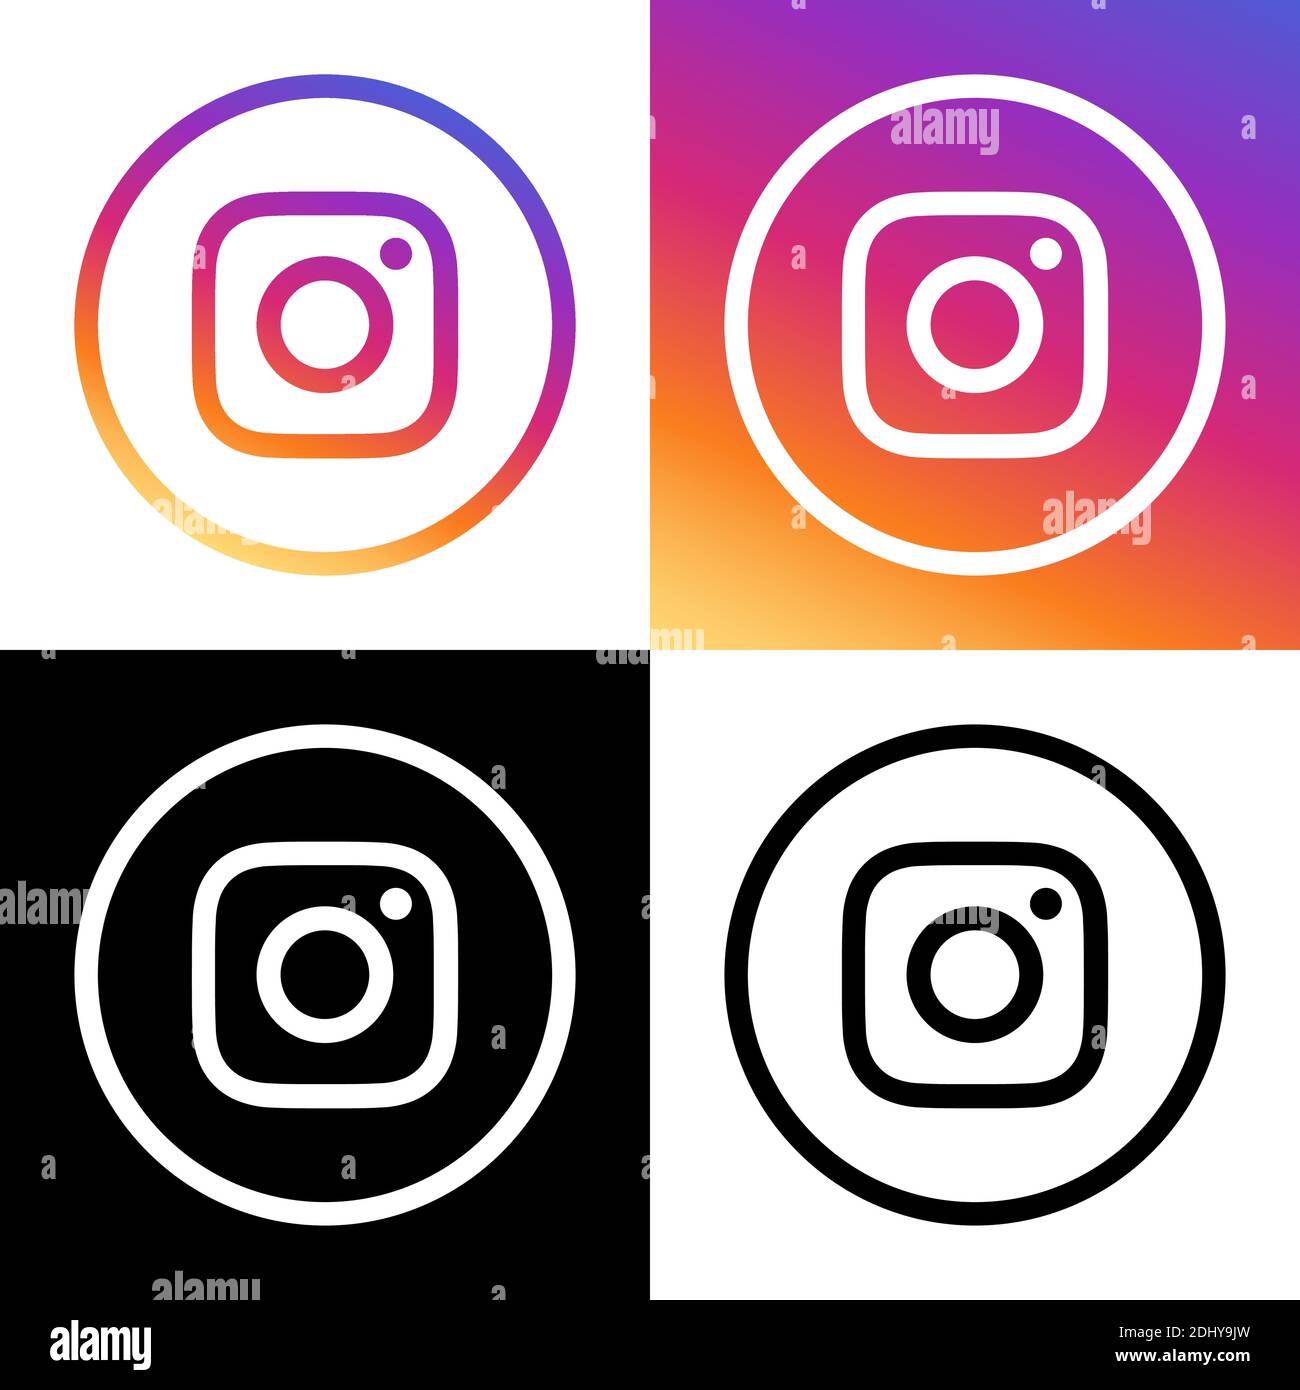 Logo Instagram - Bộ vector hình bóng đen có thể làm cho hình ảnh của bạn trở nên sang trọng và chuyên nghiệp hơn. Nếu bạn đang tìm cách để tăng sự chú ý đến thương hiệu của mình, hãy sử dụng hình ảnh này để tạo ra một ấn tượng mạnh mẽ trên trang cá nhân của mình.